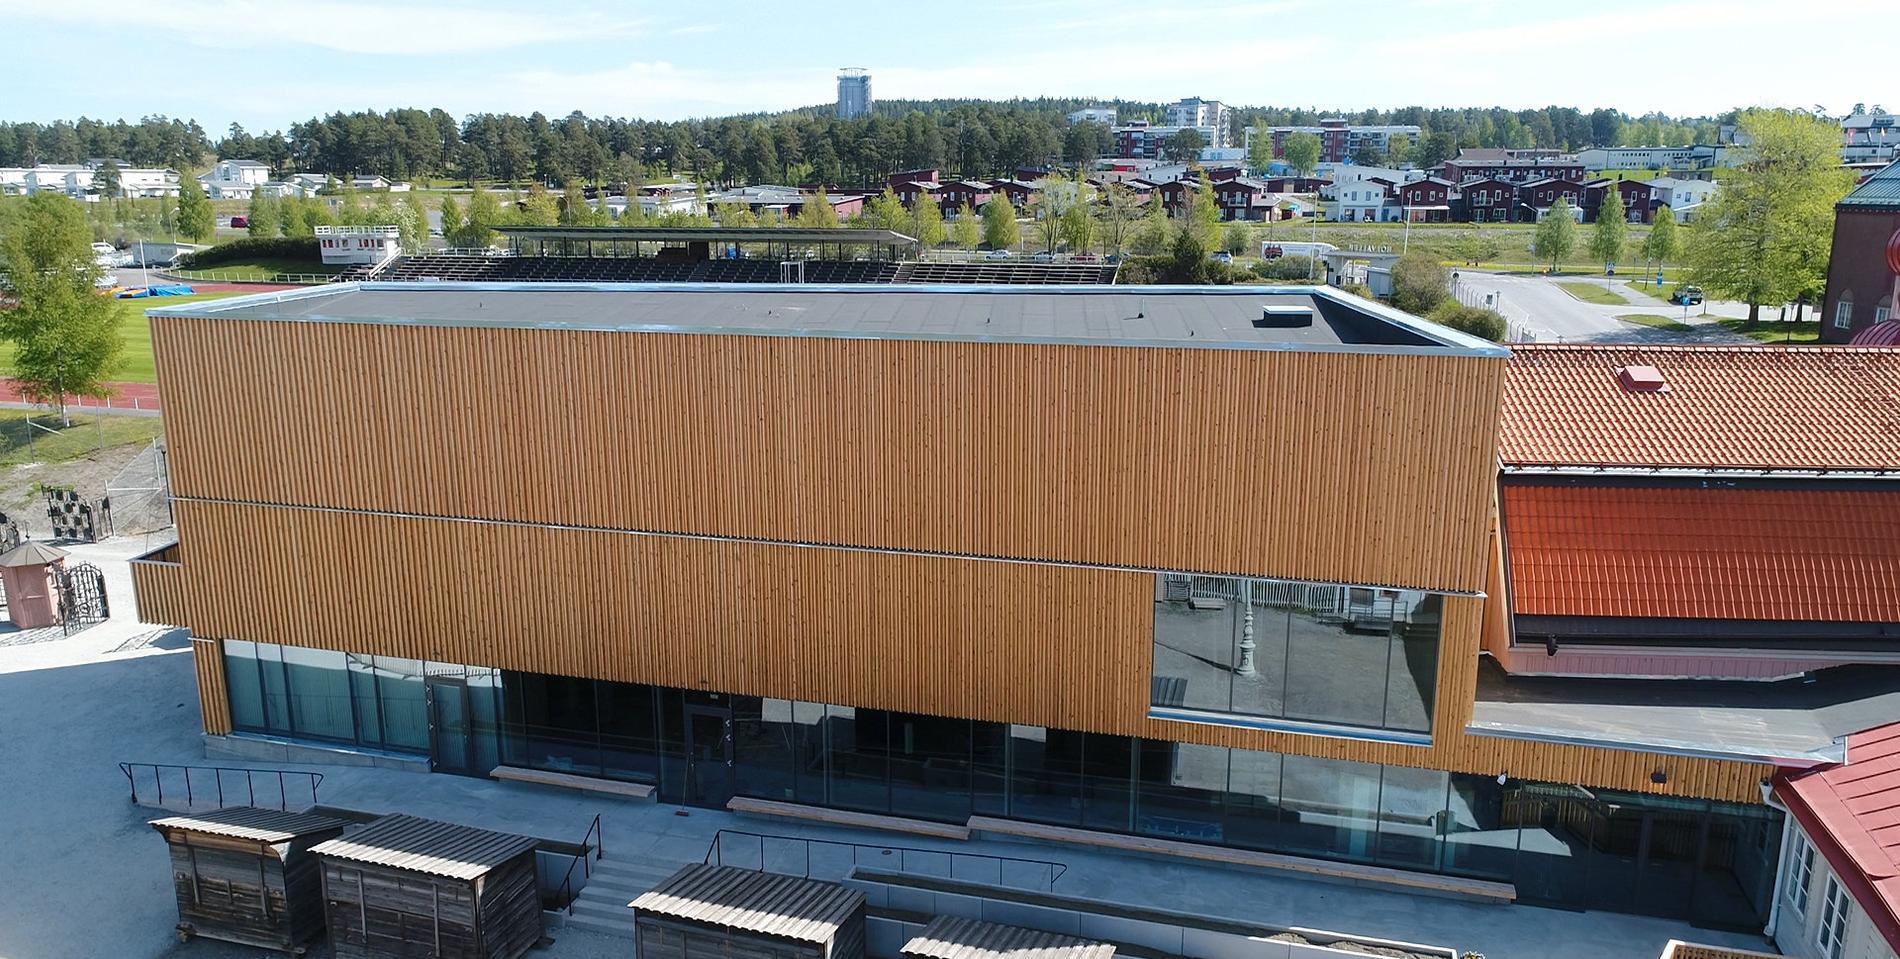 Jamtli i Östersund är ett av de länsmuseeer som förbereder sig för att öppna igen. Pressbild.